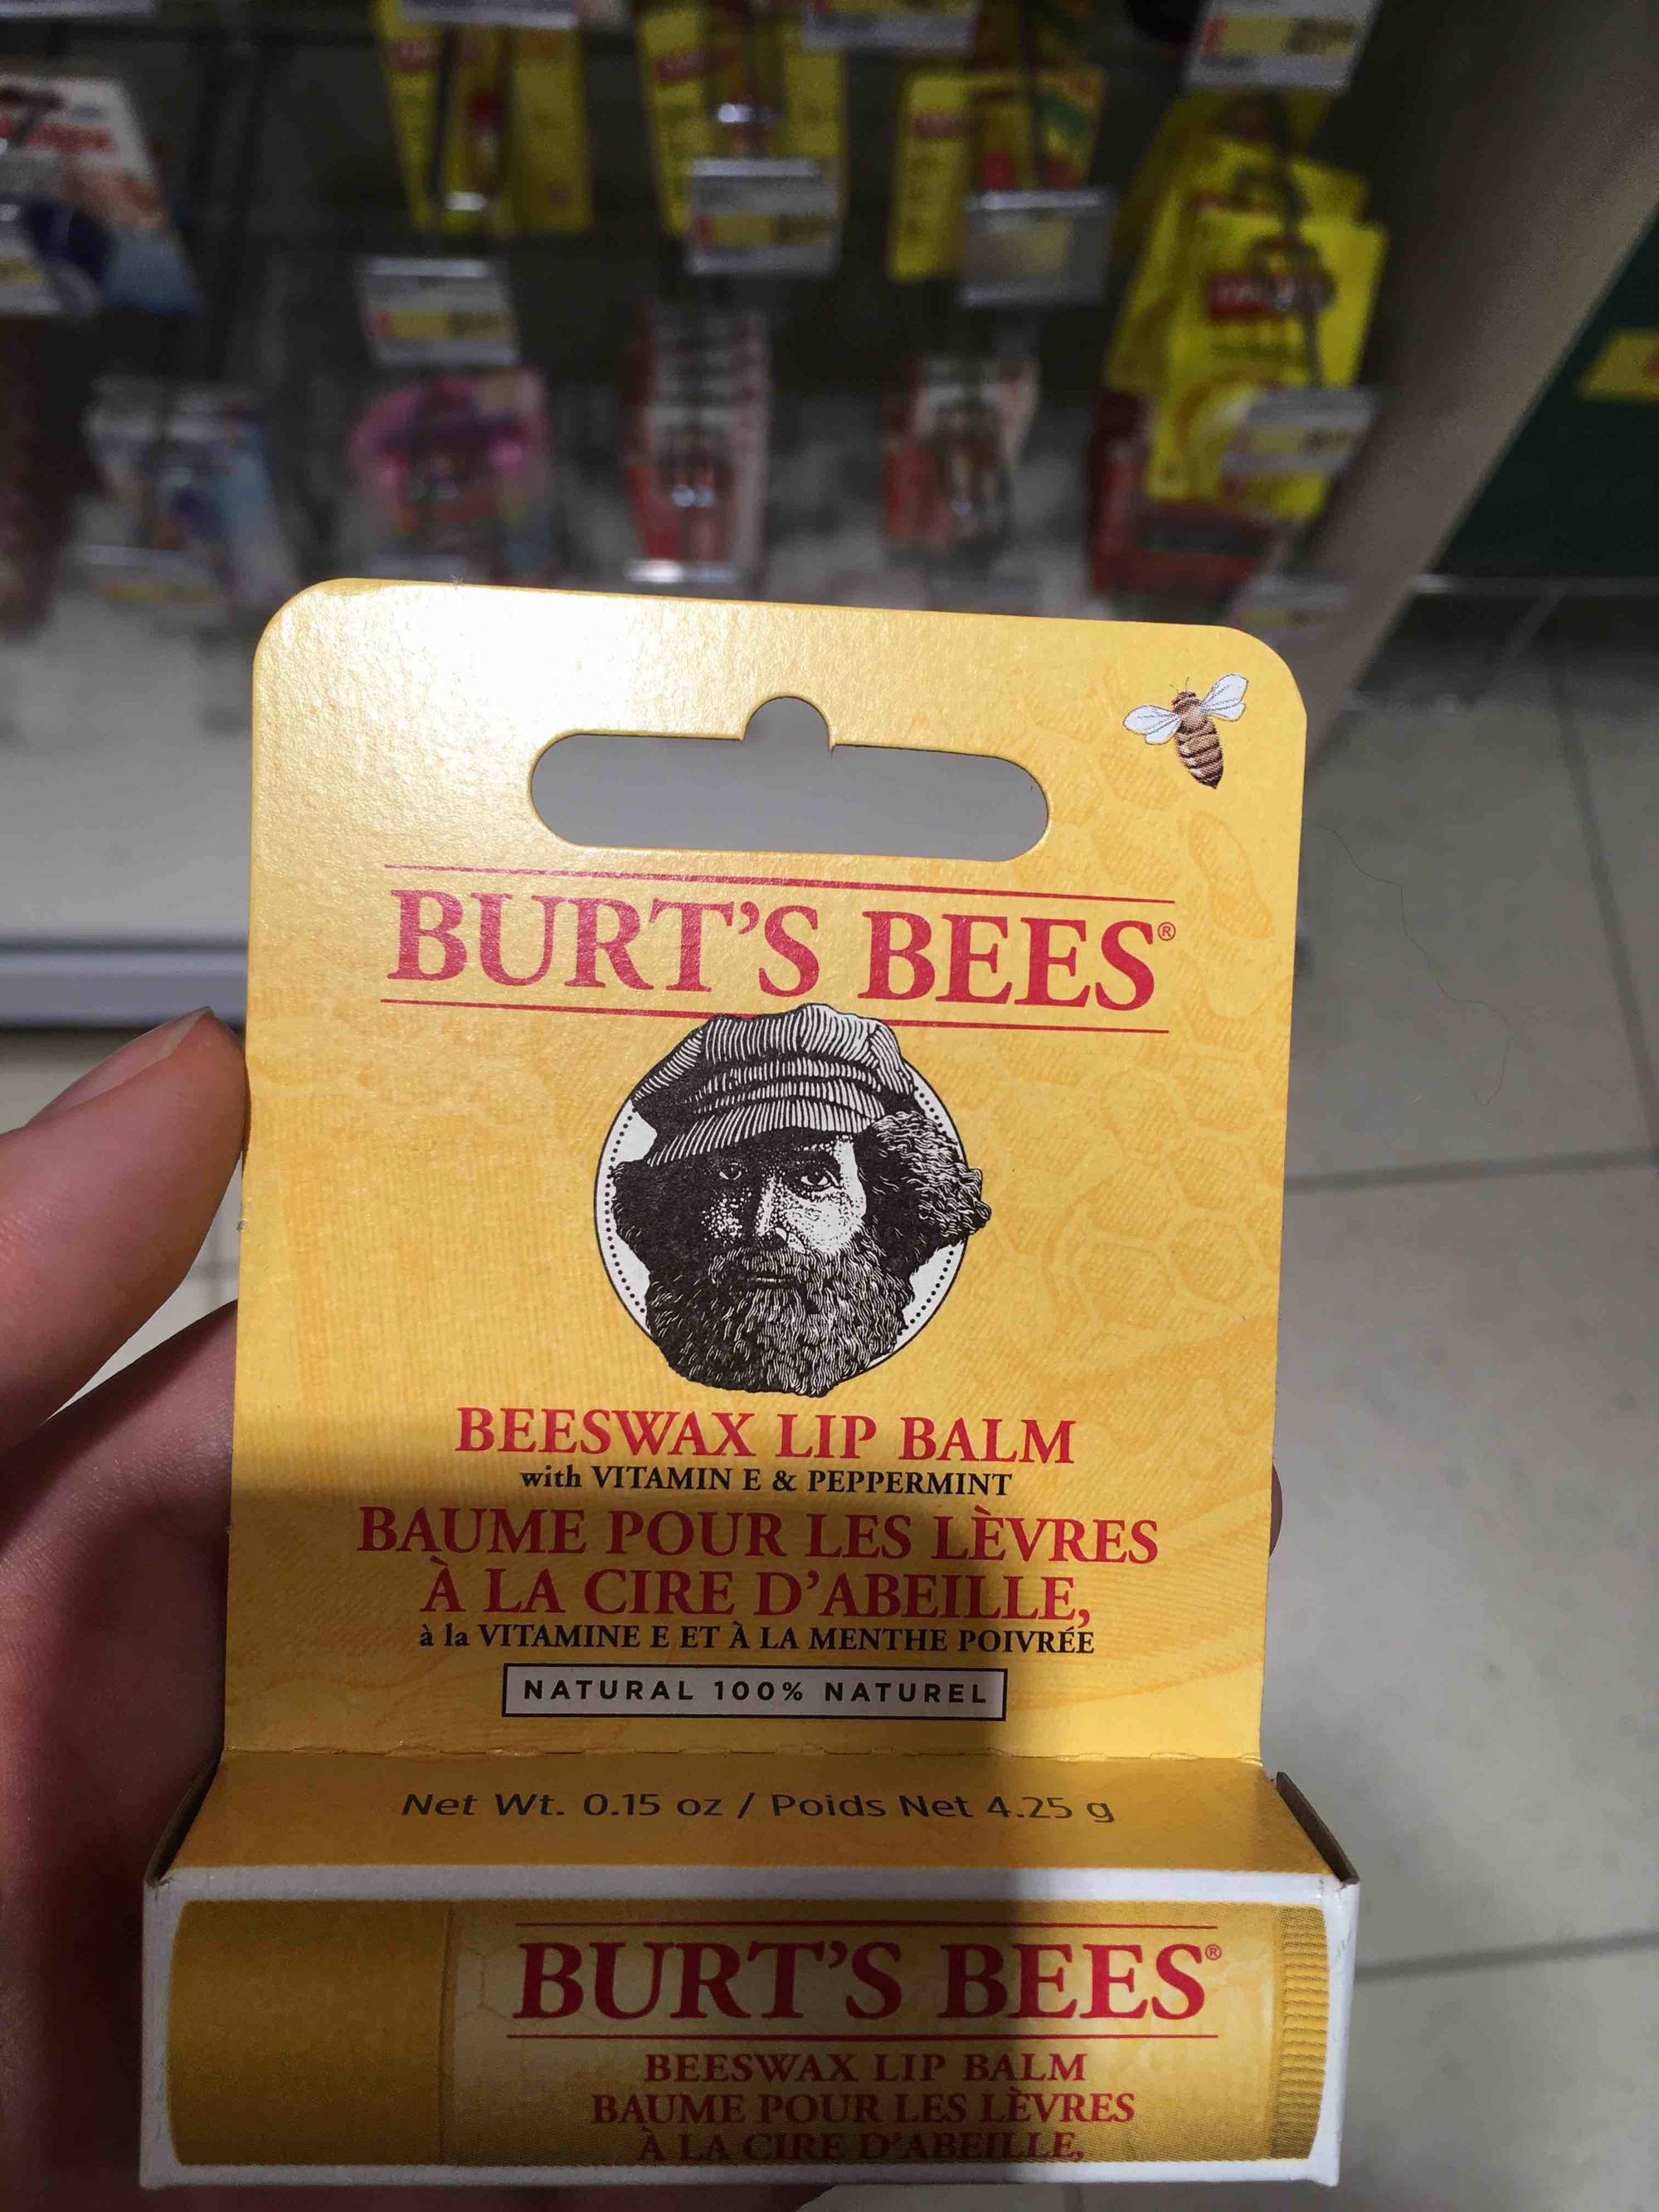 BURT'S BEES - Baume pour les lèvres à la cire d'abeille